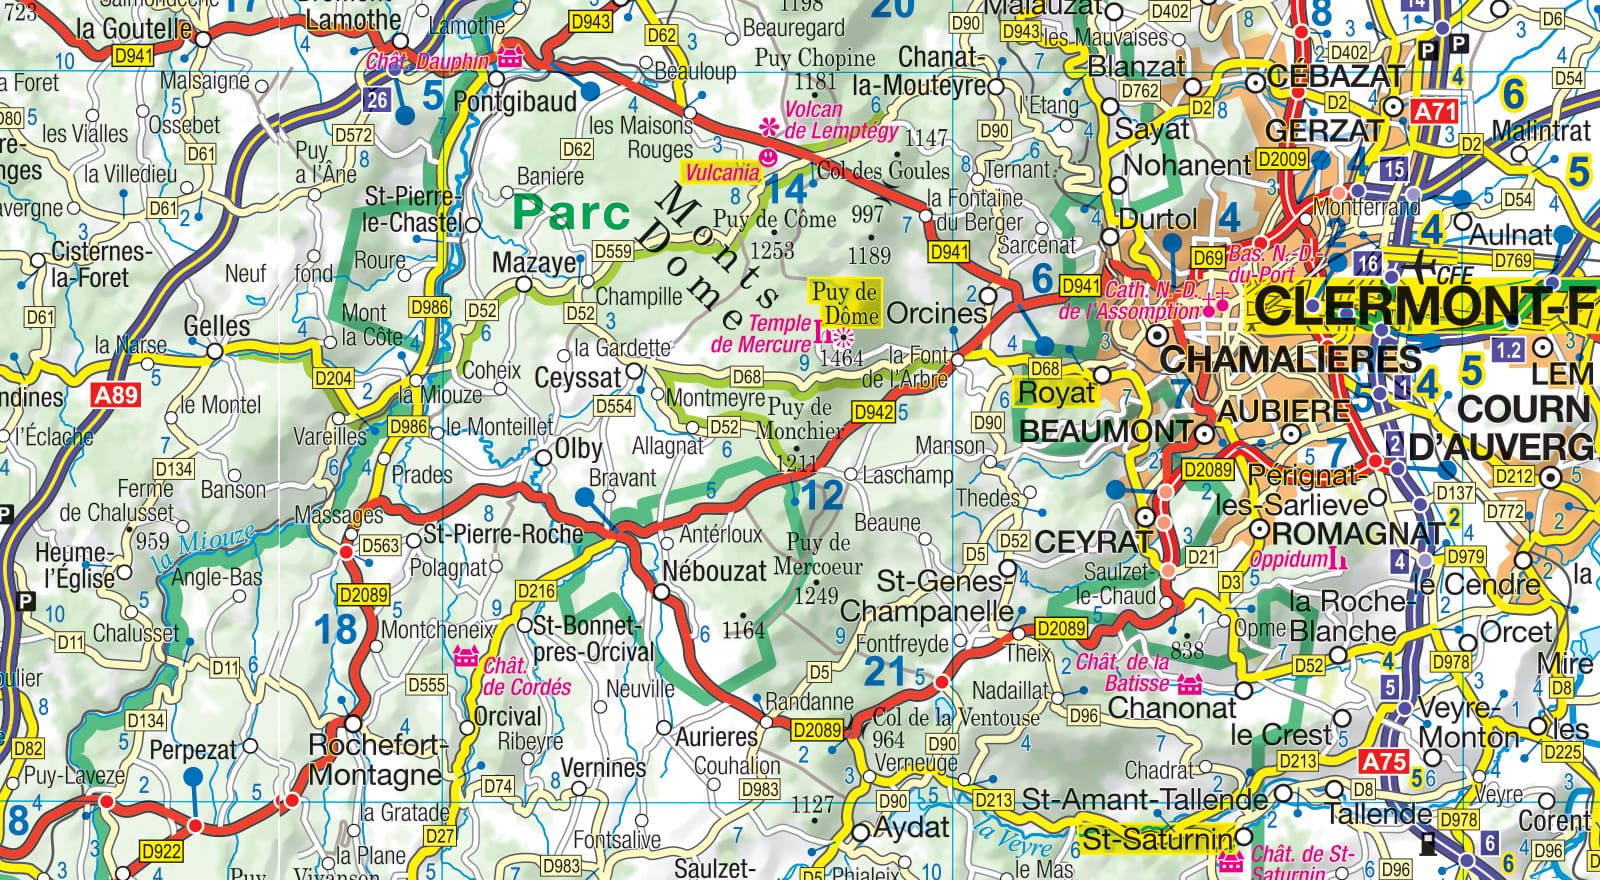 Auvergne-Limousin (Französisches Zentralmassiv) 1:300.000 - MoTourMaps - Motorradkarte